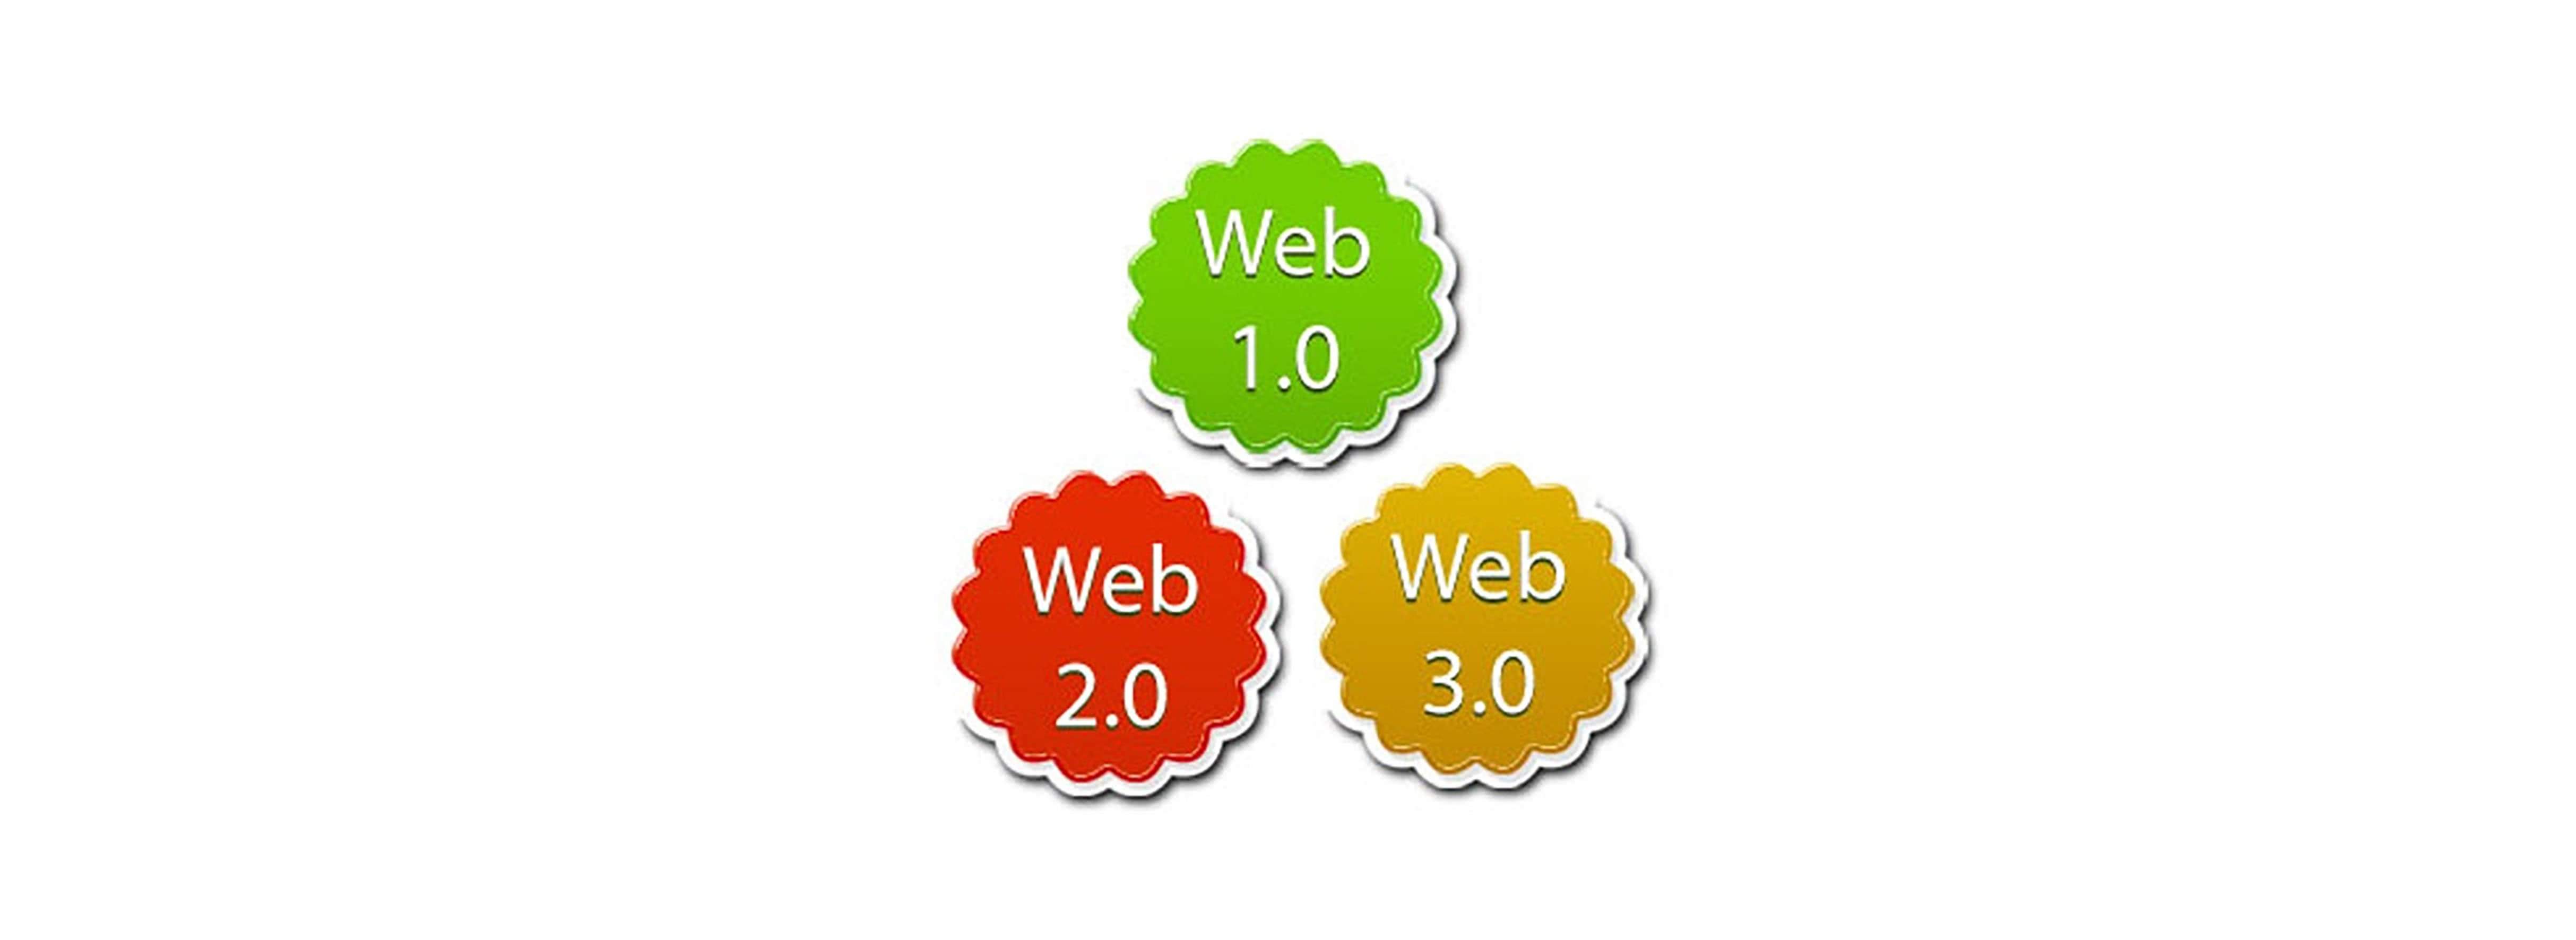 Ton web3. Технологии web 2.0. Технология web 3.0. Web 2 web 3. Web 1.0 web 2.0 web 3.0.